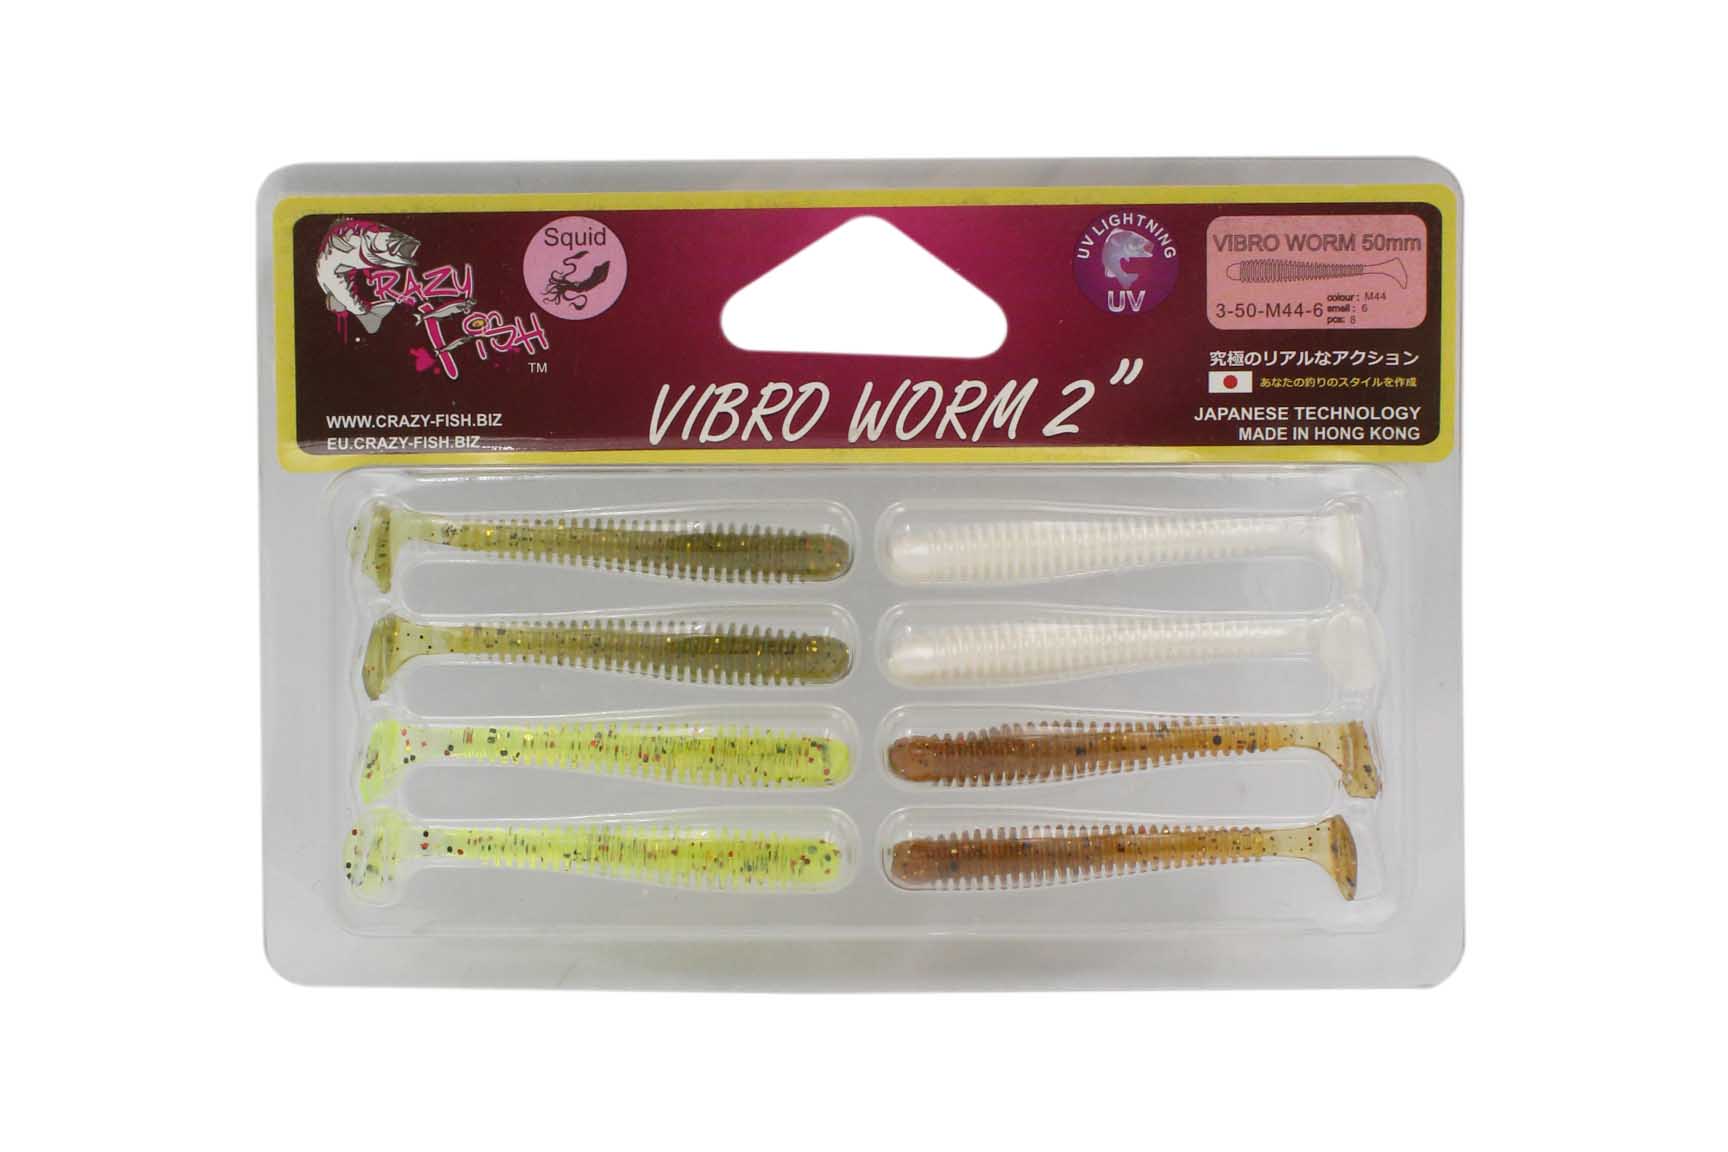 Приманка Crazy Fish Vibro worm 2&quot; 3-50-M44-6 - фото 1